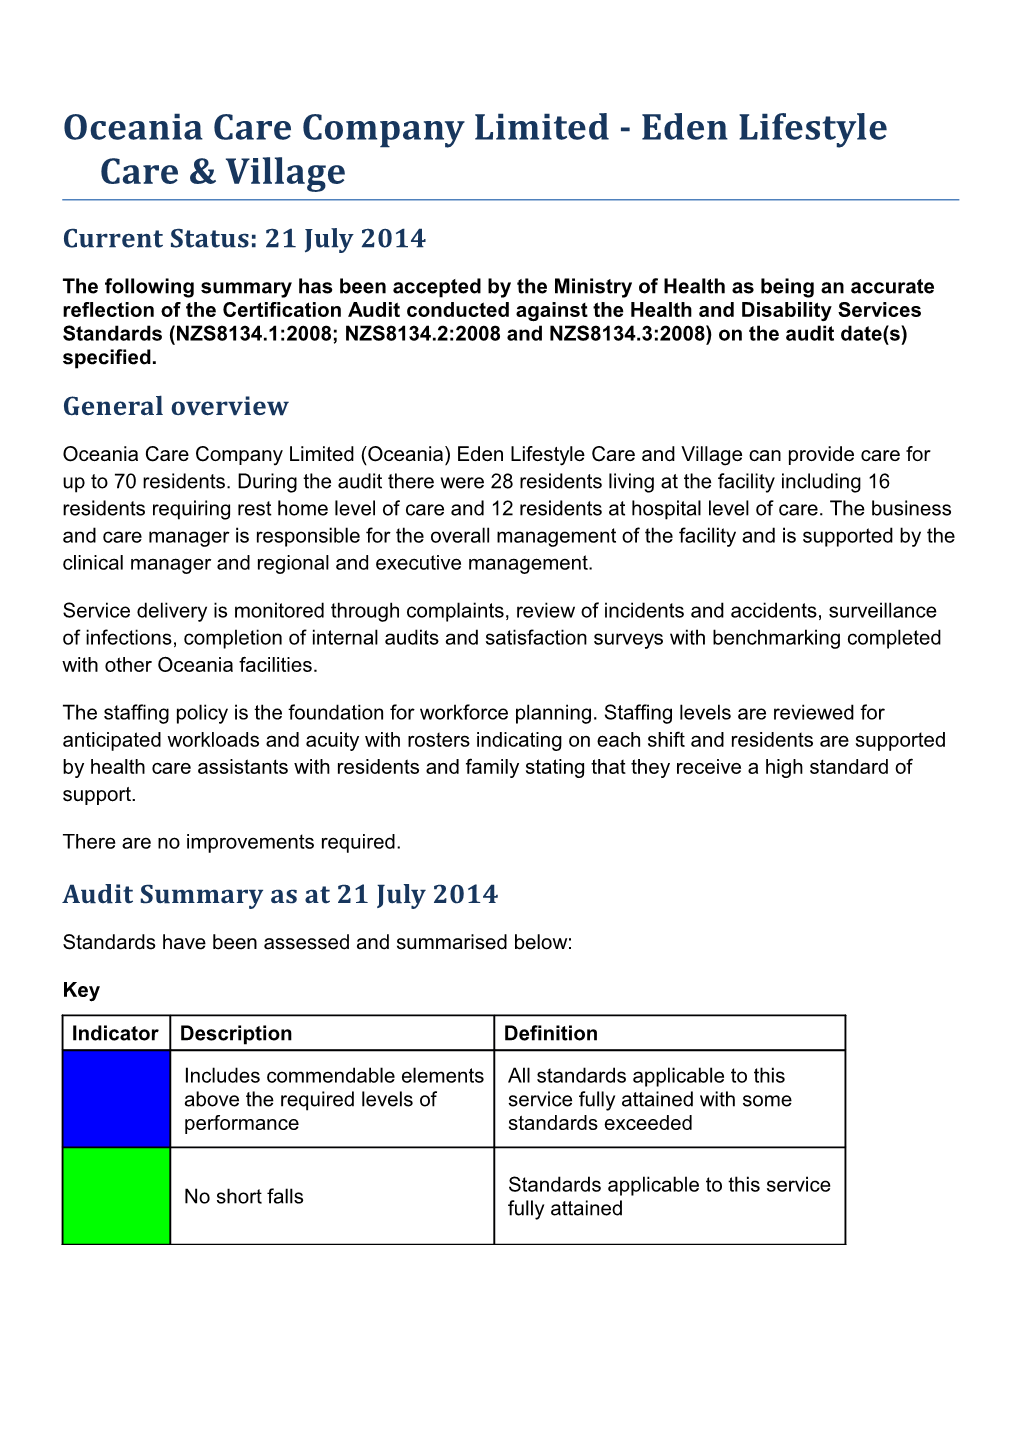 Certificaiton Audit Summary s12